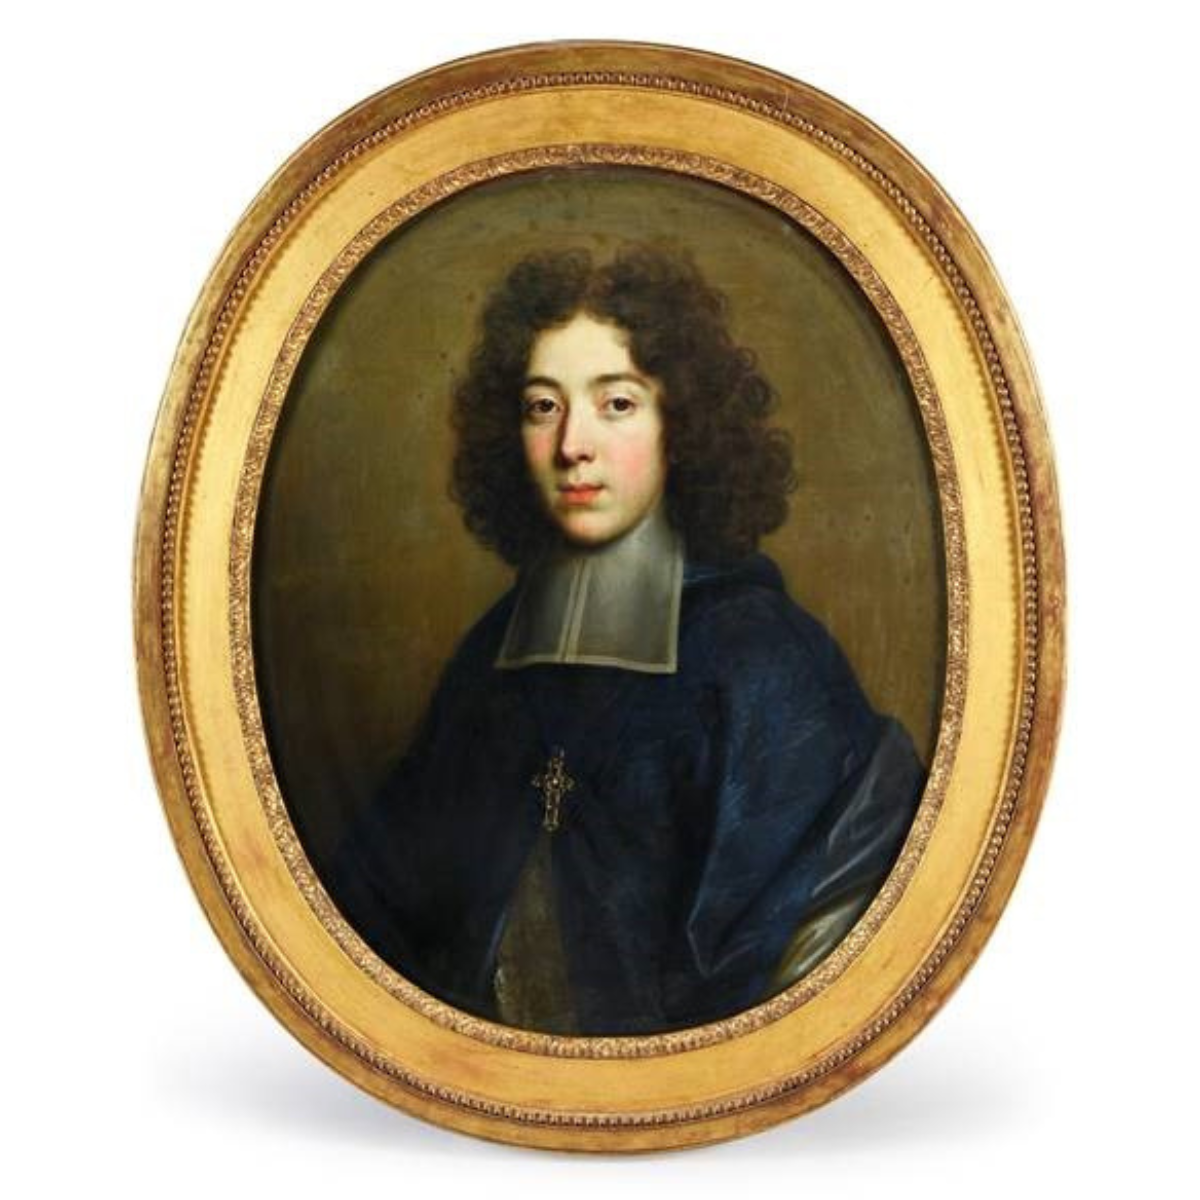 1.Nicolas_de_LARGILLIERRE__1656-1746___Portrait_d_un_jeune_abbe__vers_1680-1685__huile_sur_toile__60_x_56_cm__c__Coutau-Begarie